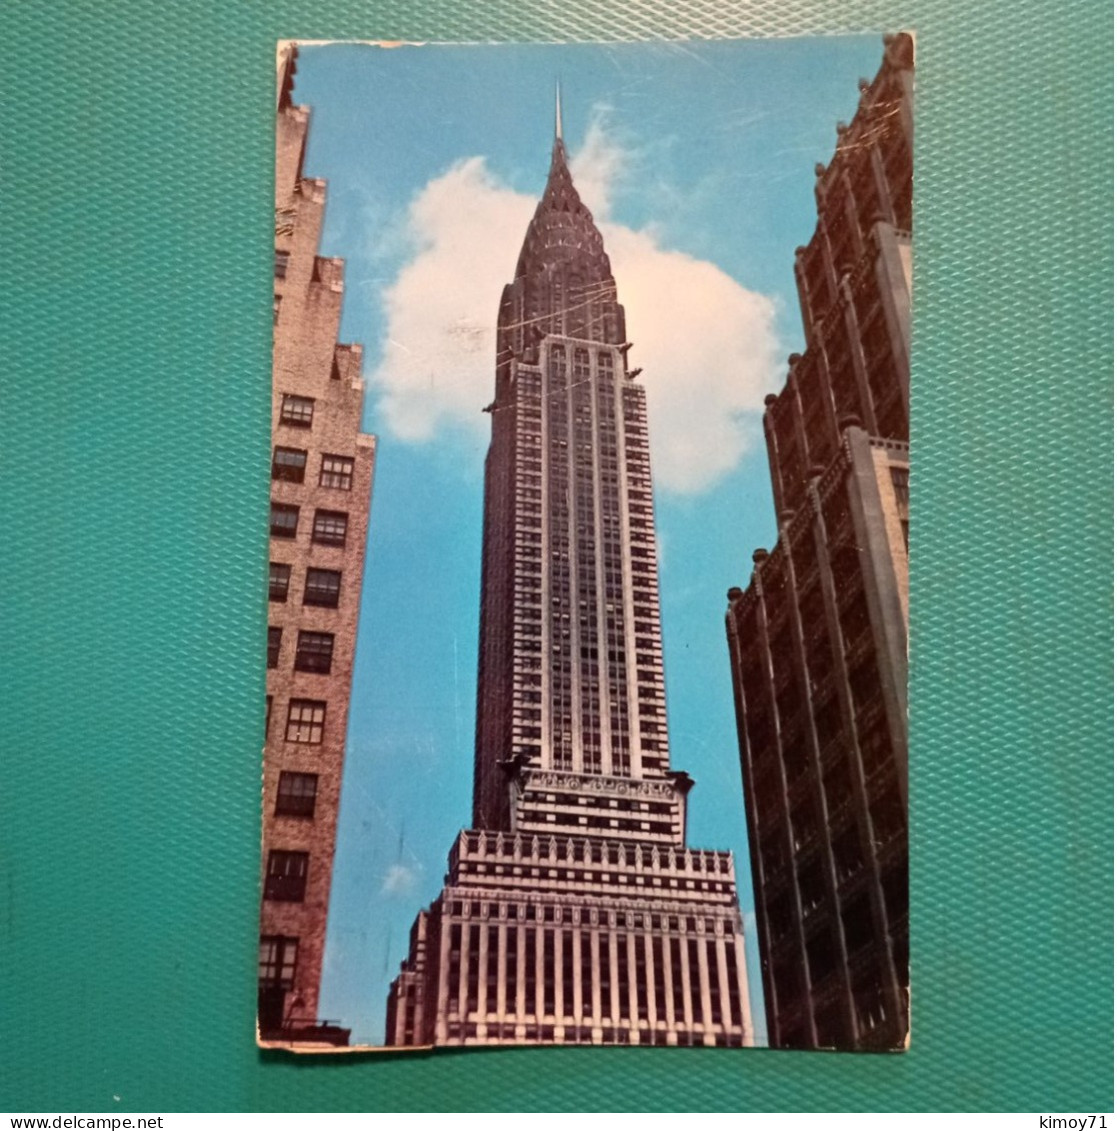 Chrysler Building, New York City. 1959 - Chrysler Building